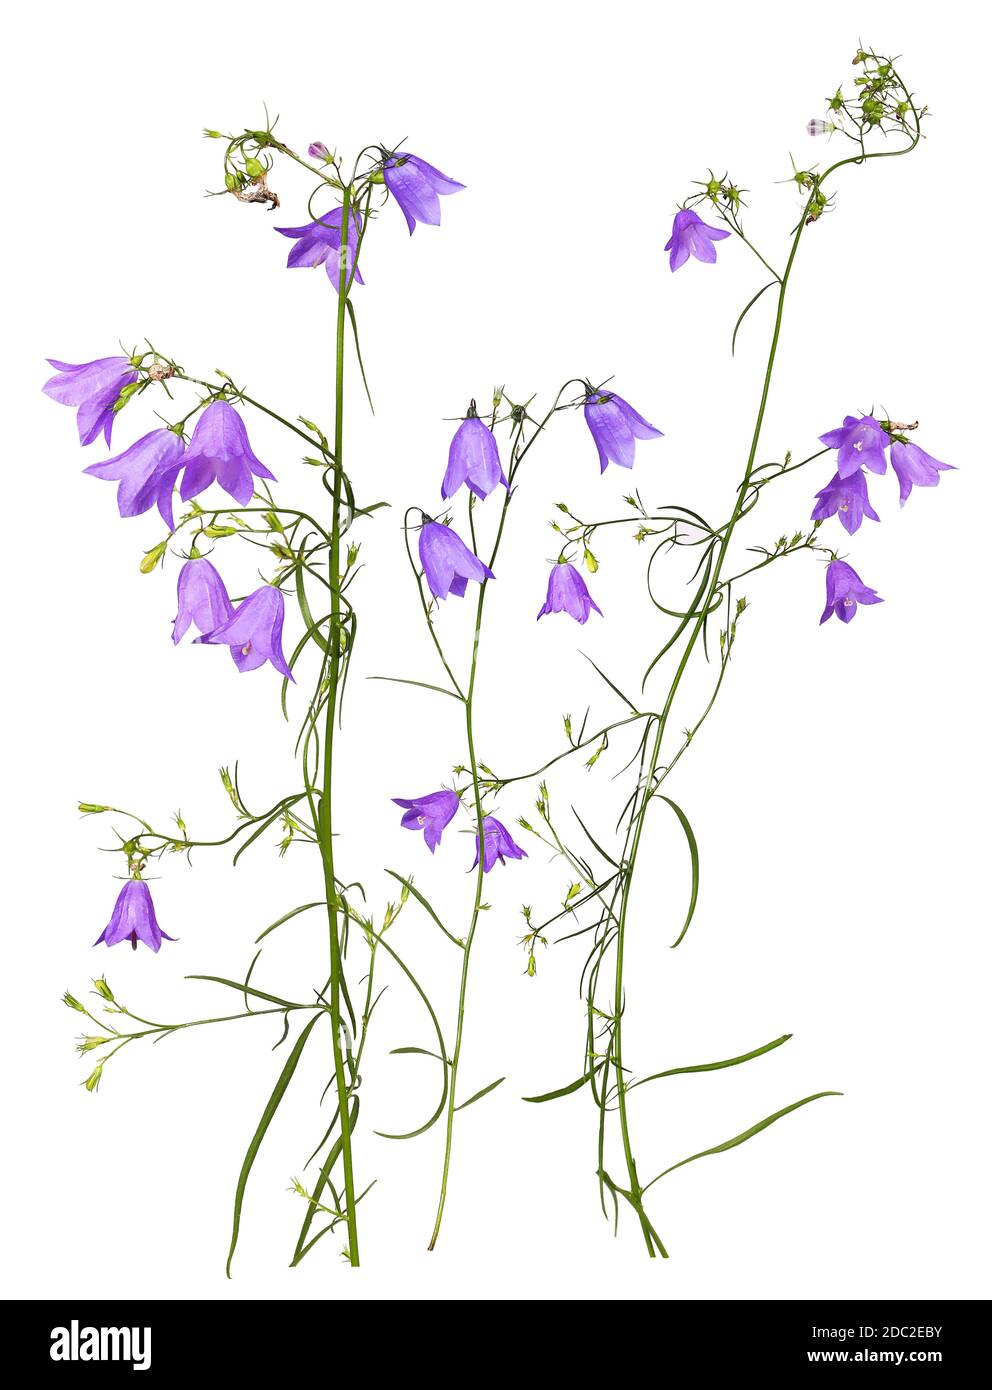 Diversi steli di bluebells prato viola, isolati Foto Stock